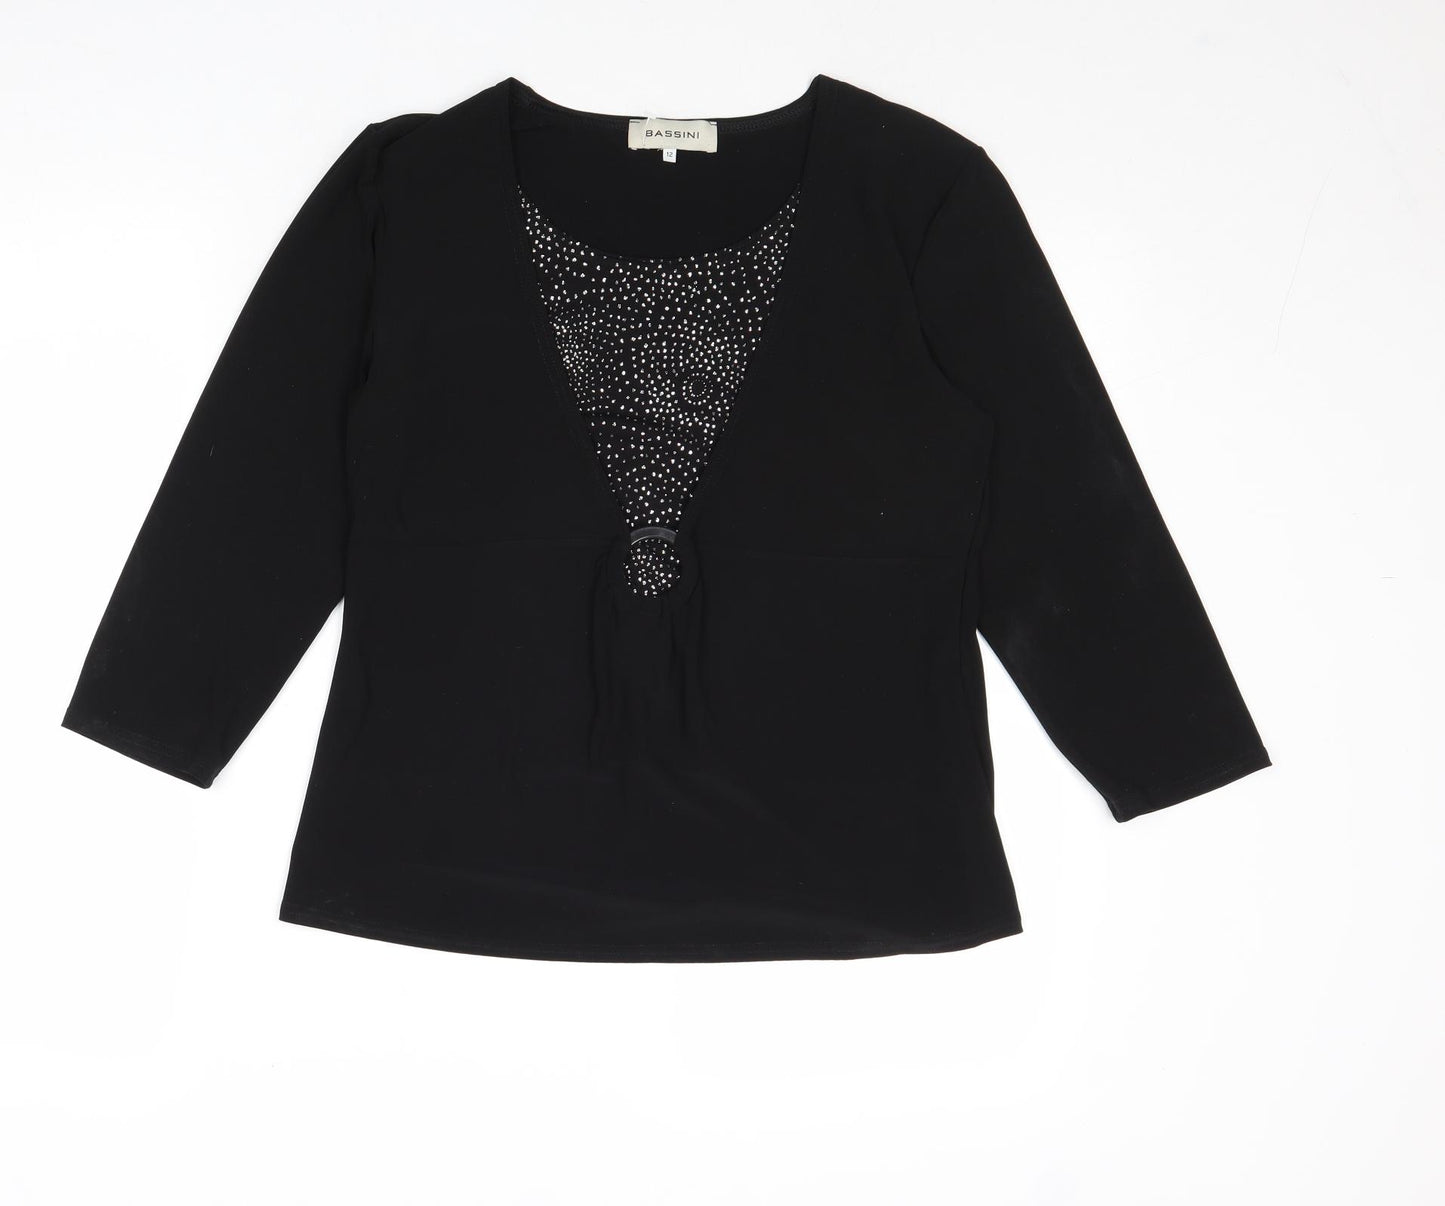 BASSINI Womens Black Polyester Basic Blouse Size 12 Round Neck